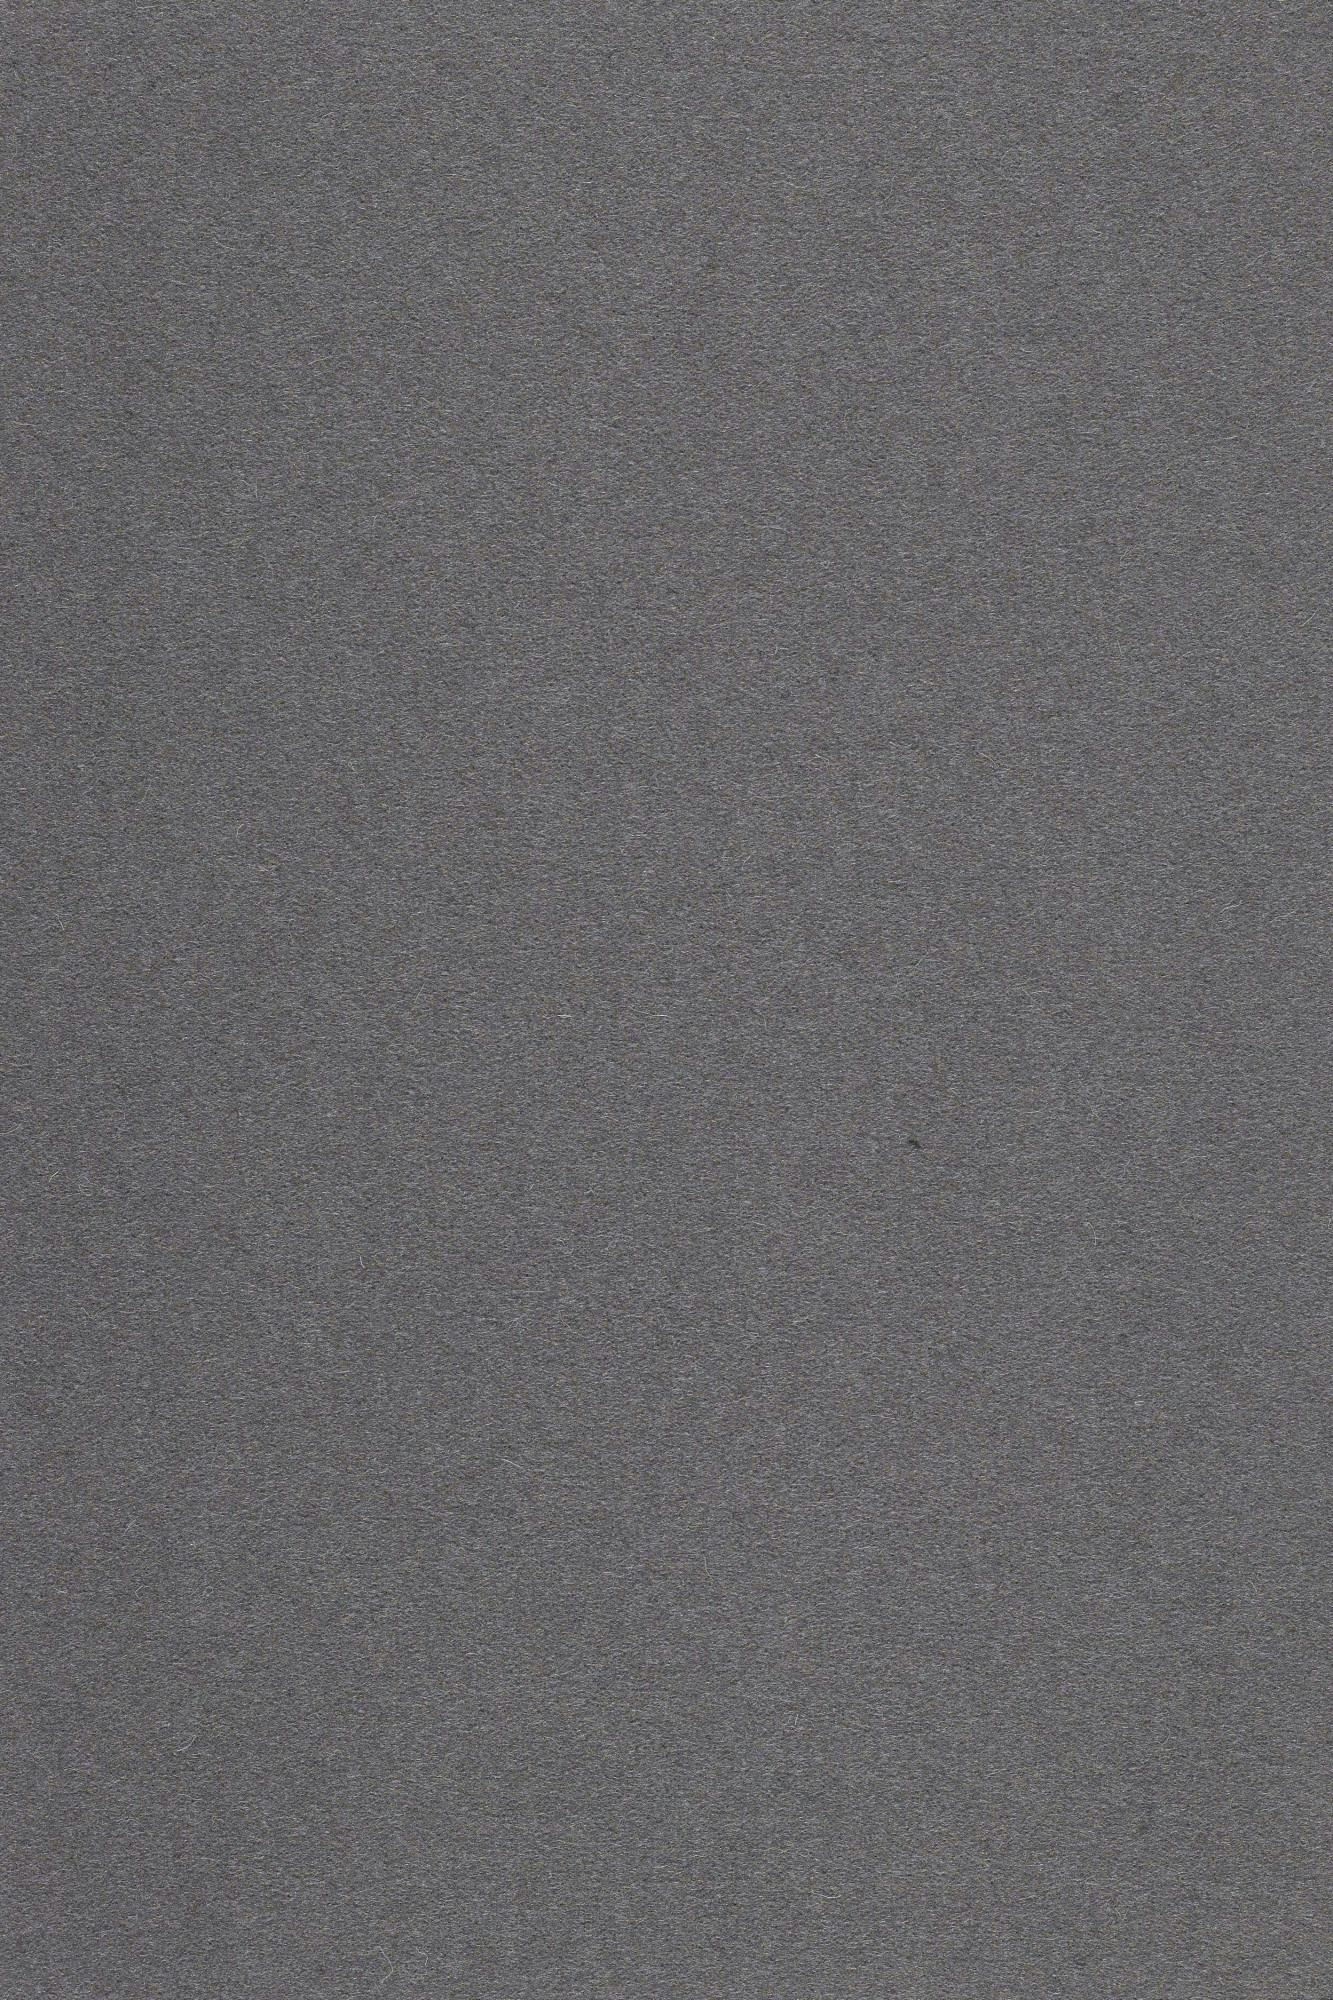 Fabric sample Divina 3 691 grey